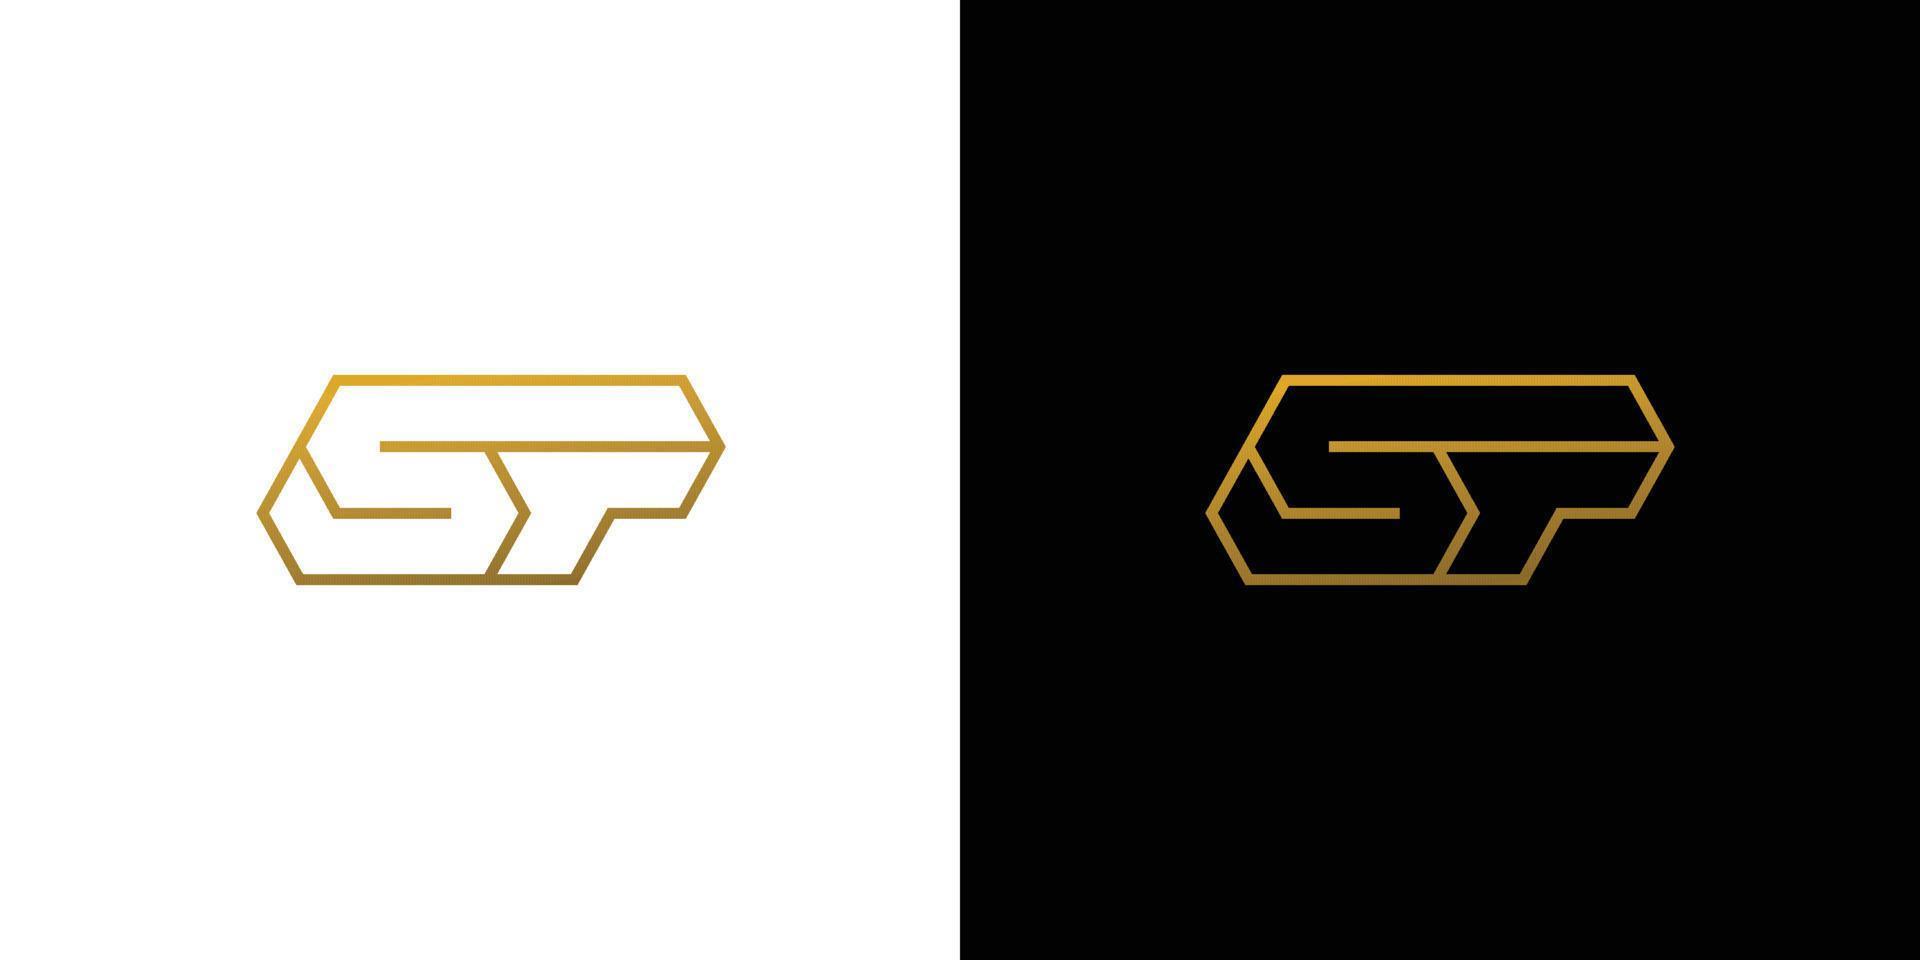 diseño de logotipo inicial de letra sp moderno y sofisticado vector